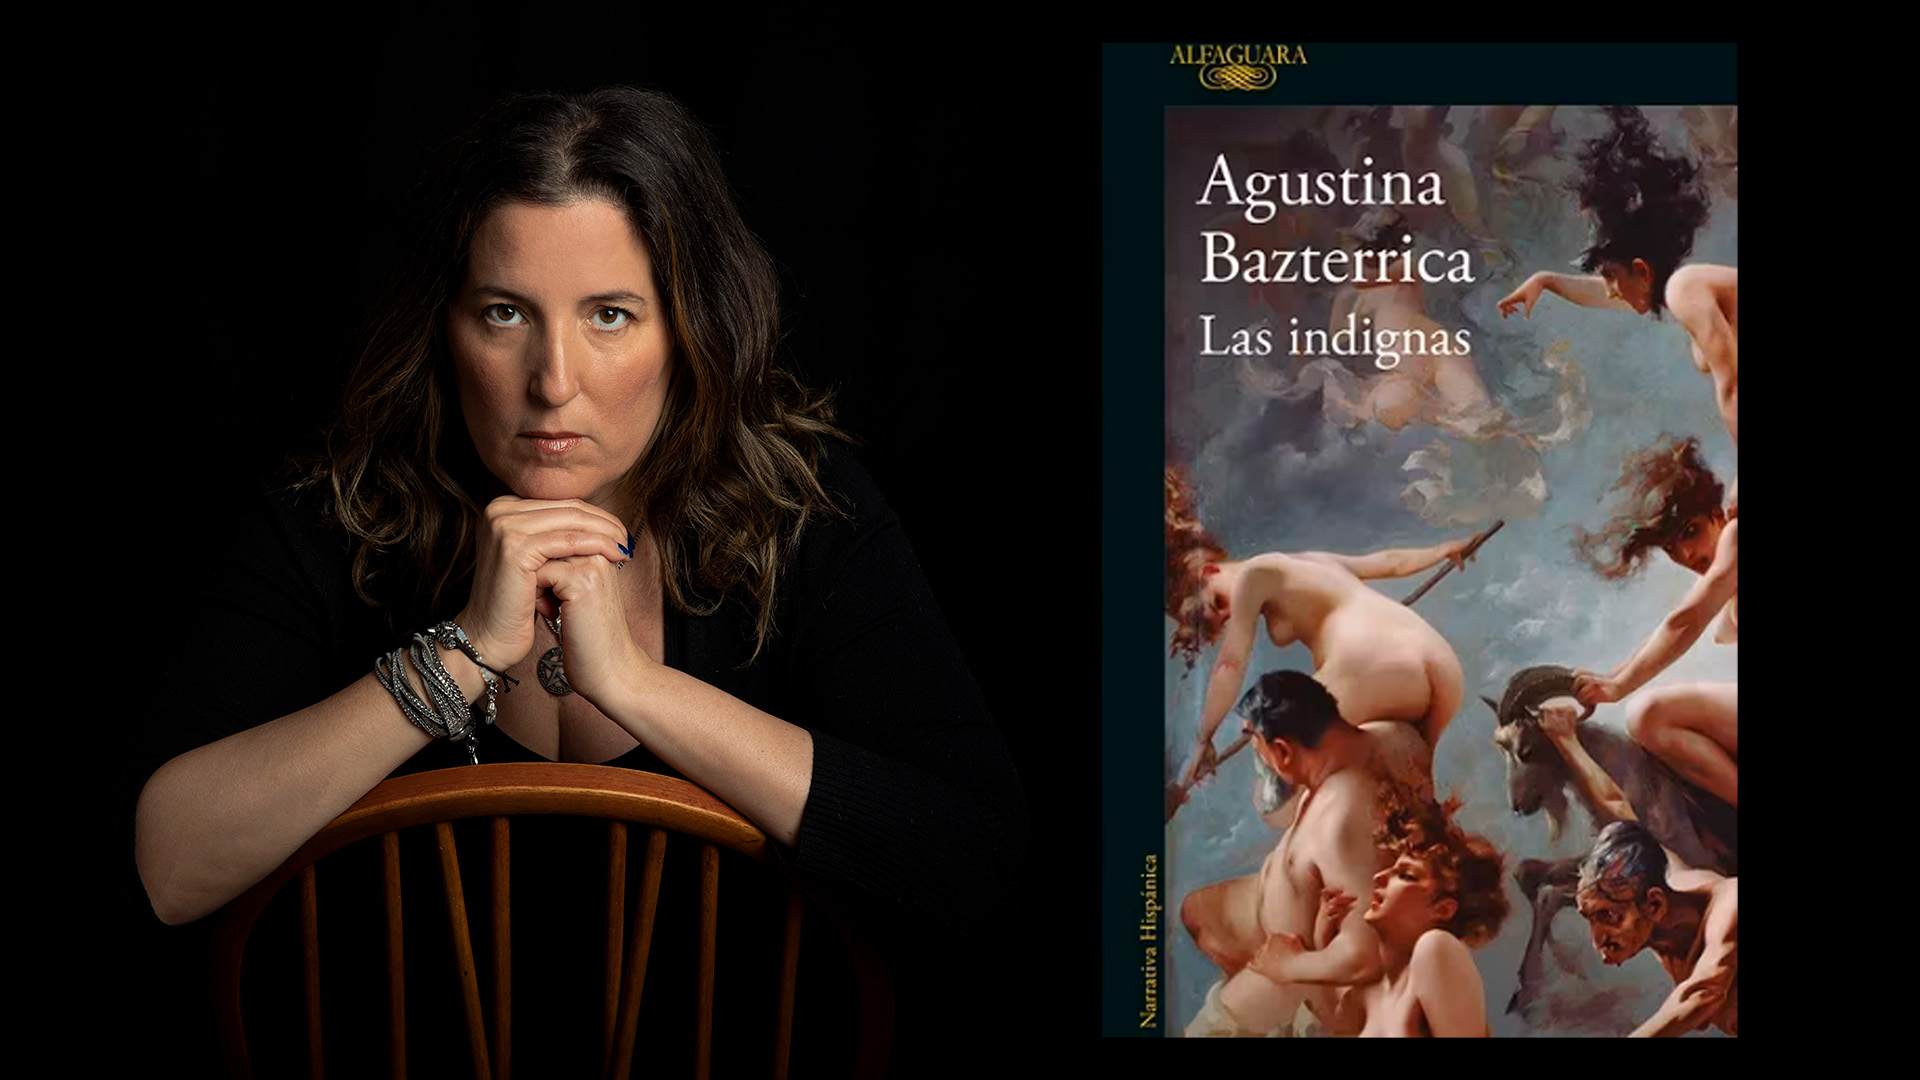 Las indignas', la brutal novela de Agustina Bazterrica que presenta un  mundo intoxicado y una secta religiosa que tortura a las mujeres - Infobae